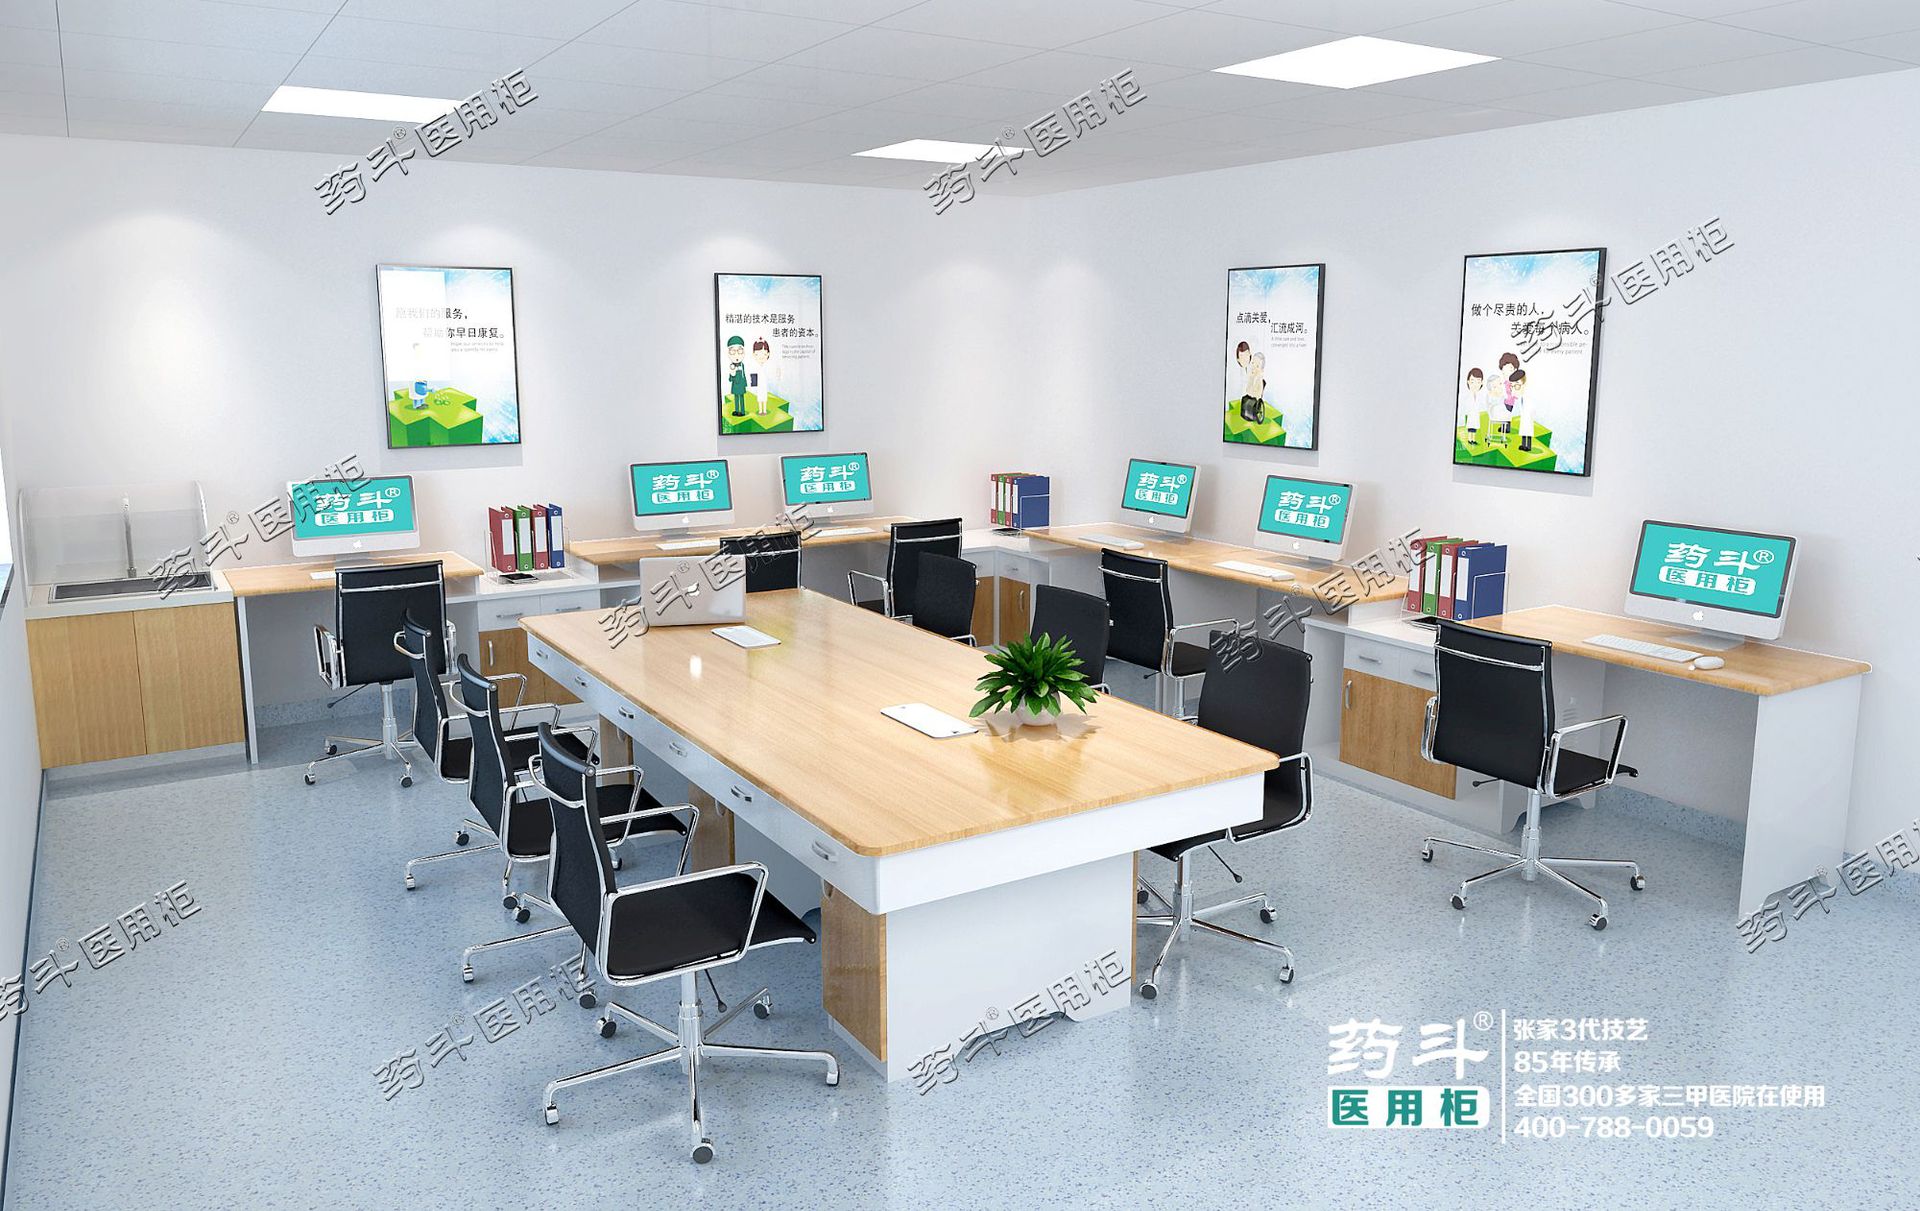 医生办公室设计 - 空间设计 - 上海医匠设计院公司